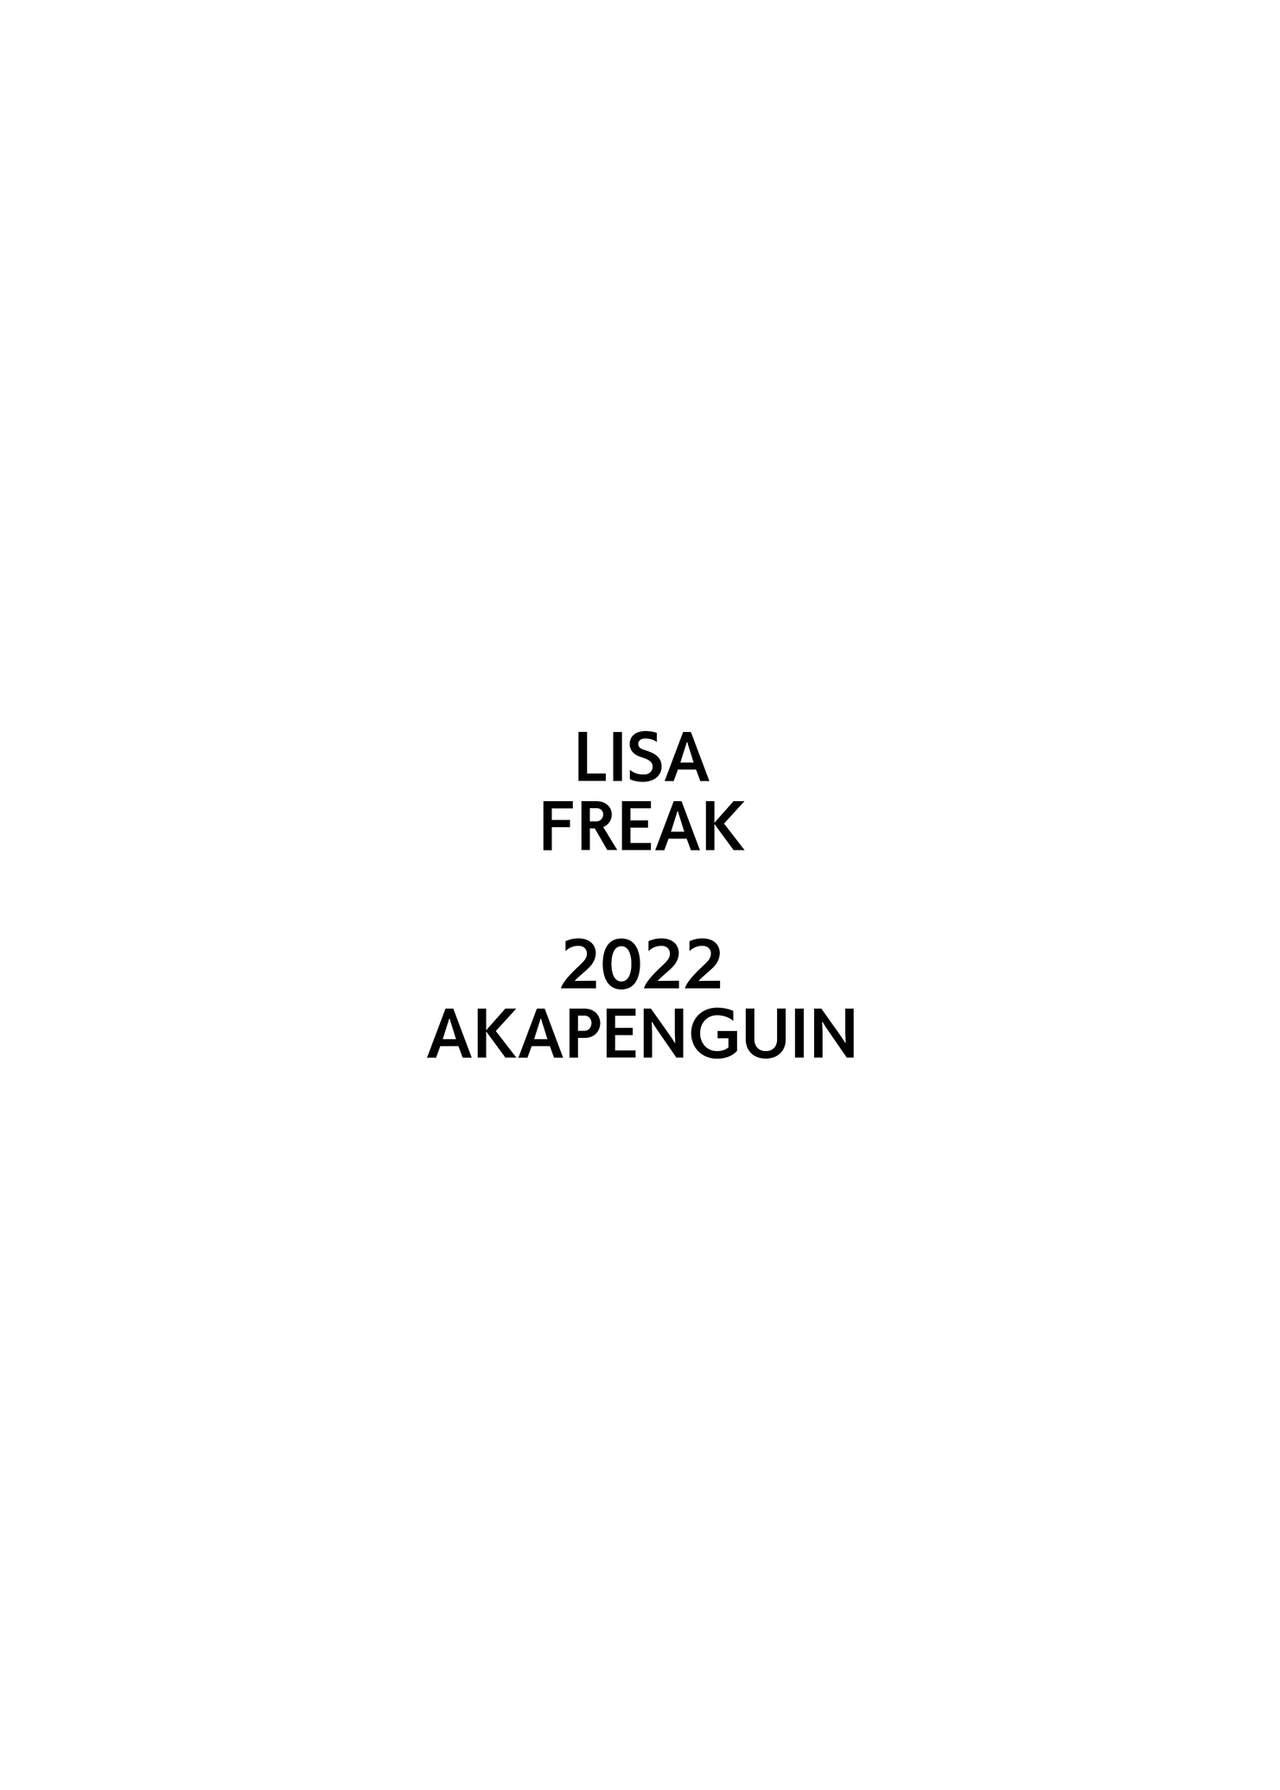 LISA FREAK 11